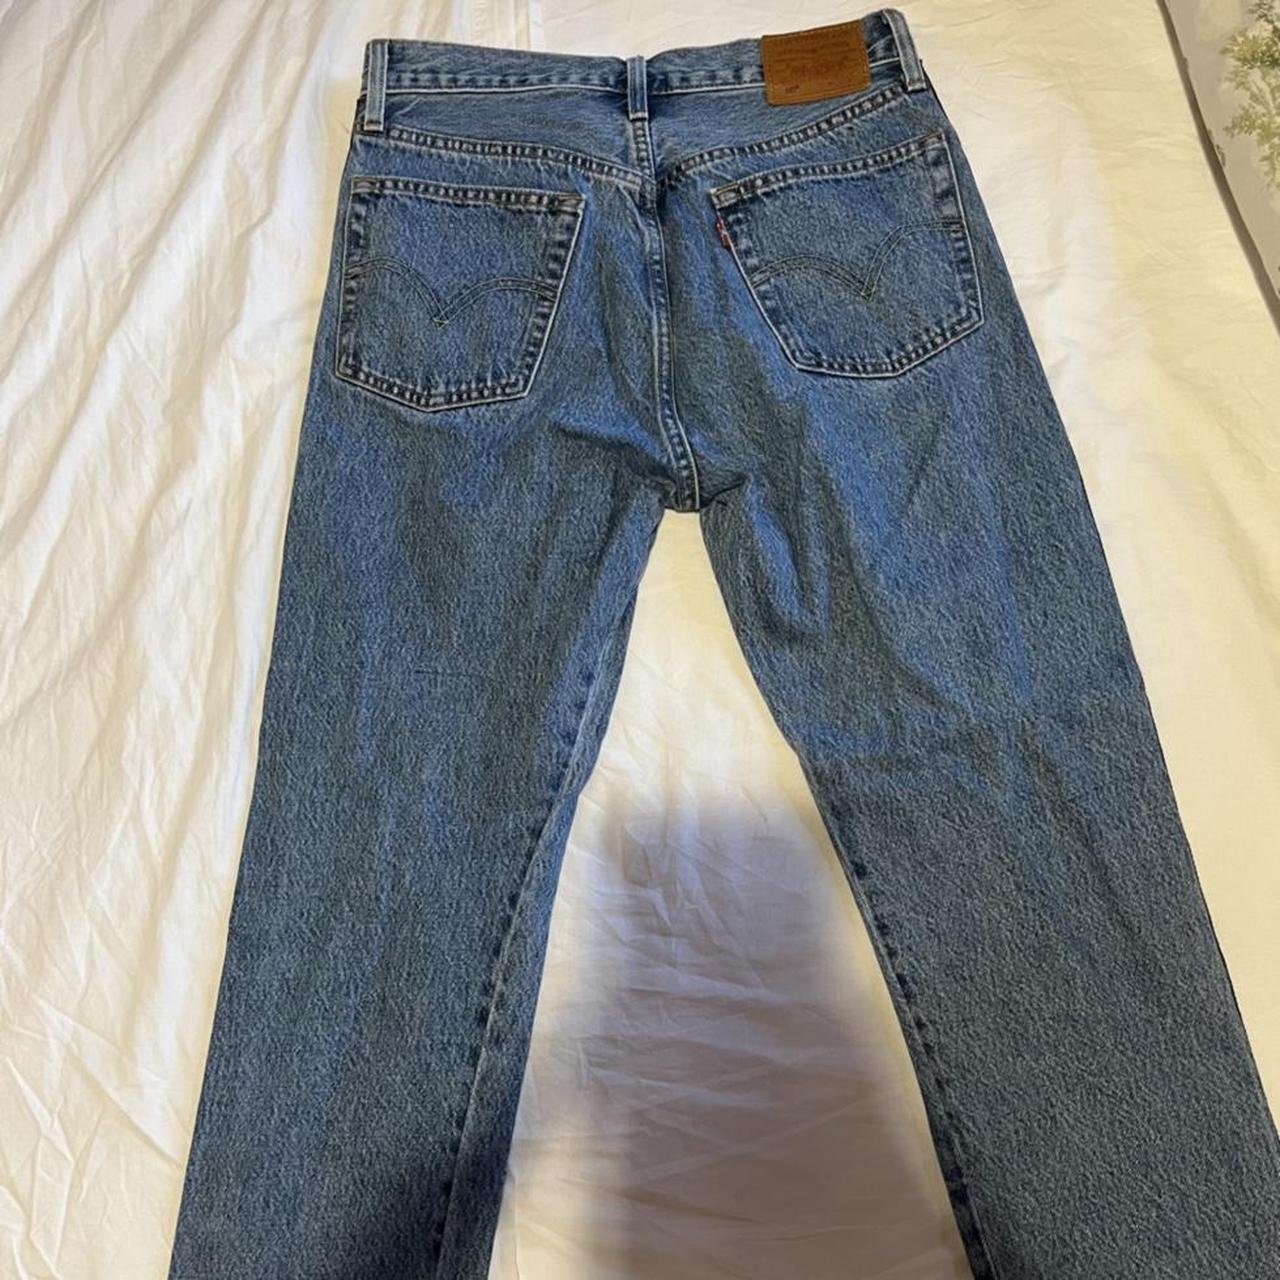 Jeans 501 Levi’s originale usato pochissimo e in... - Depop